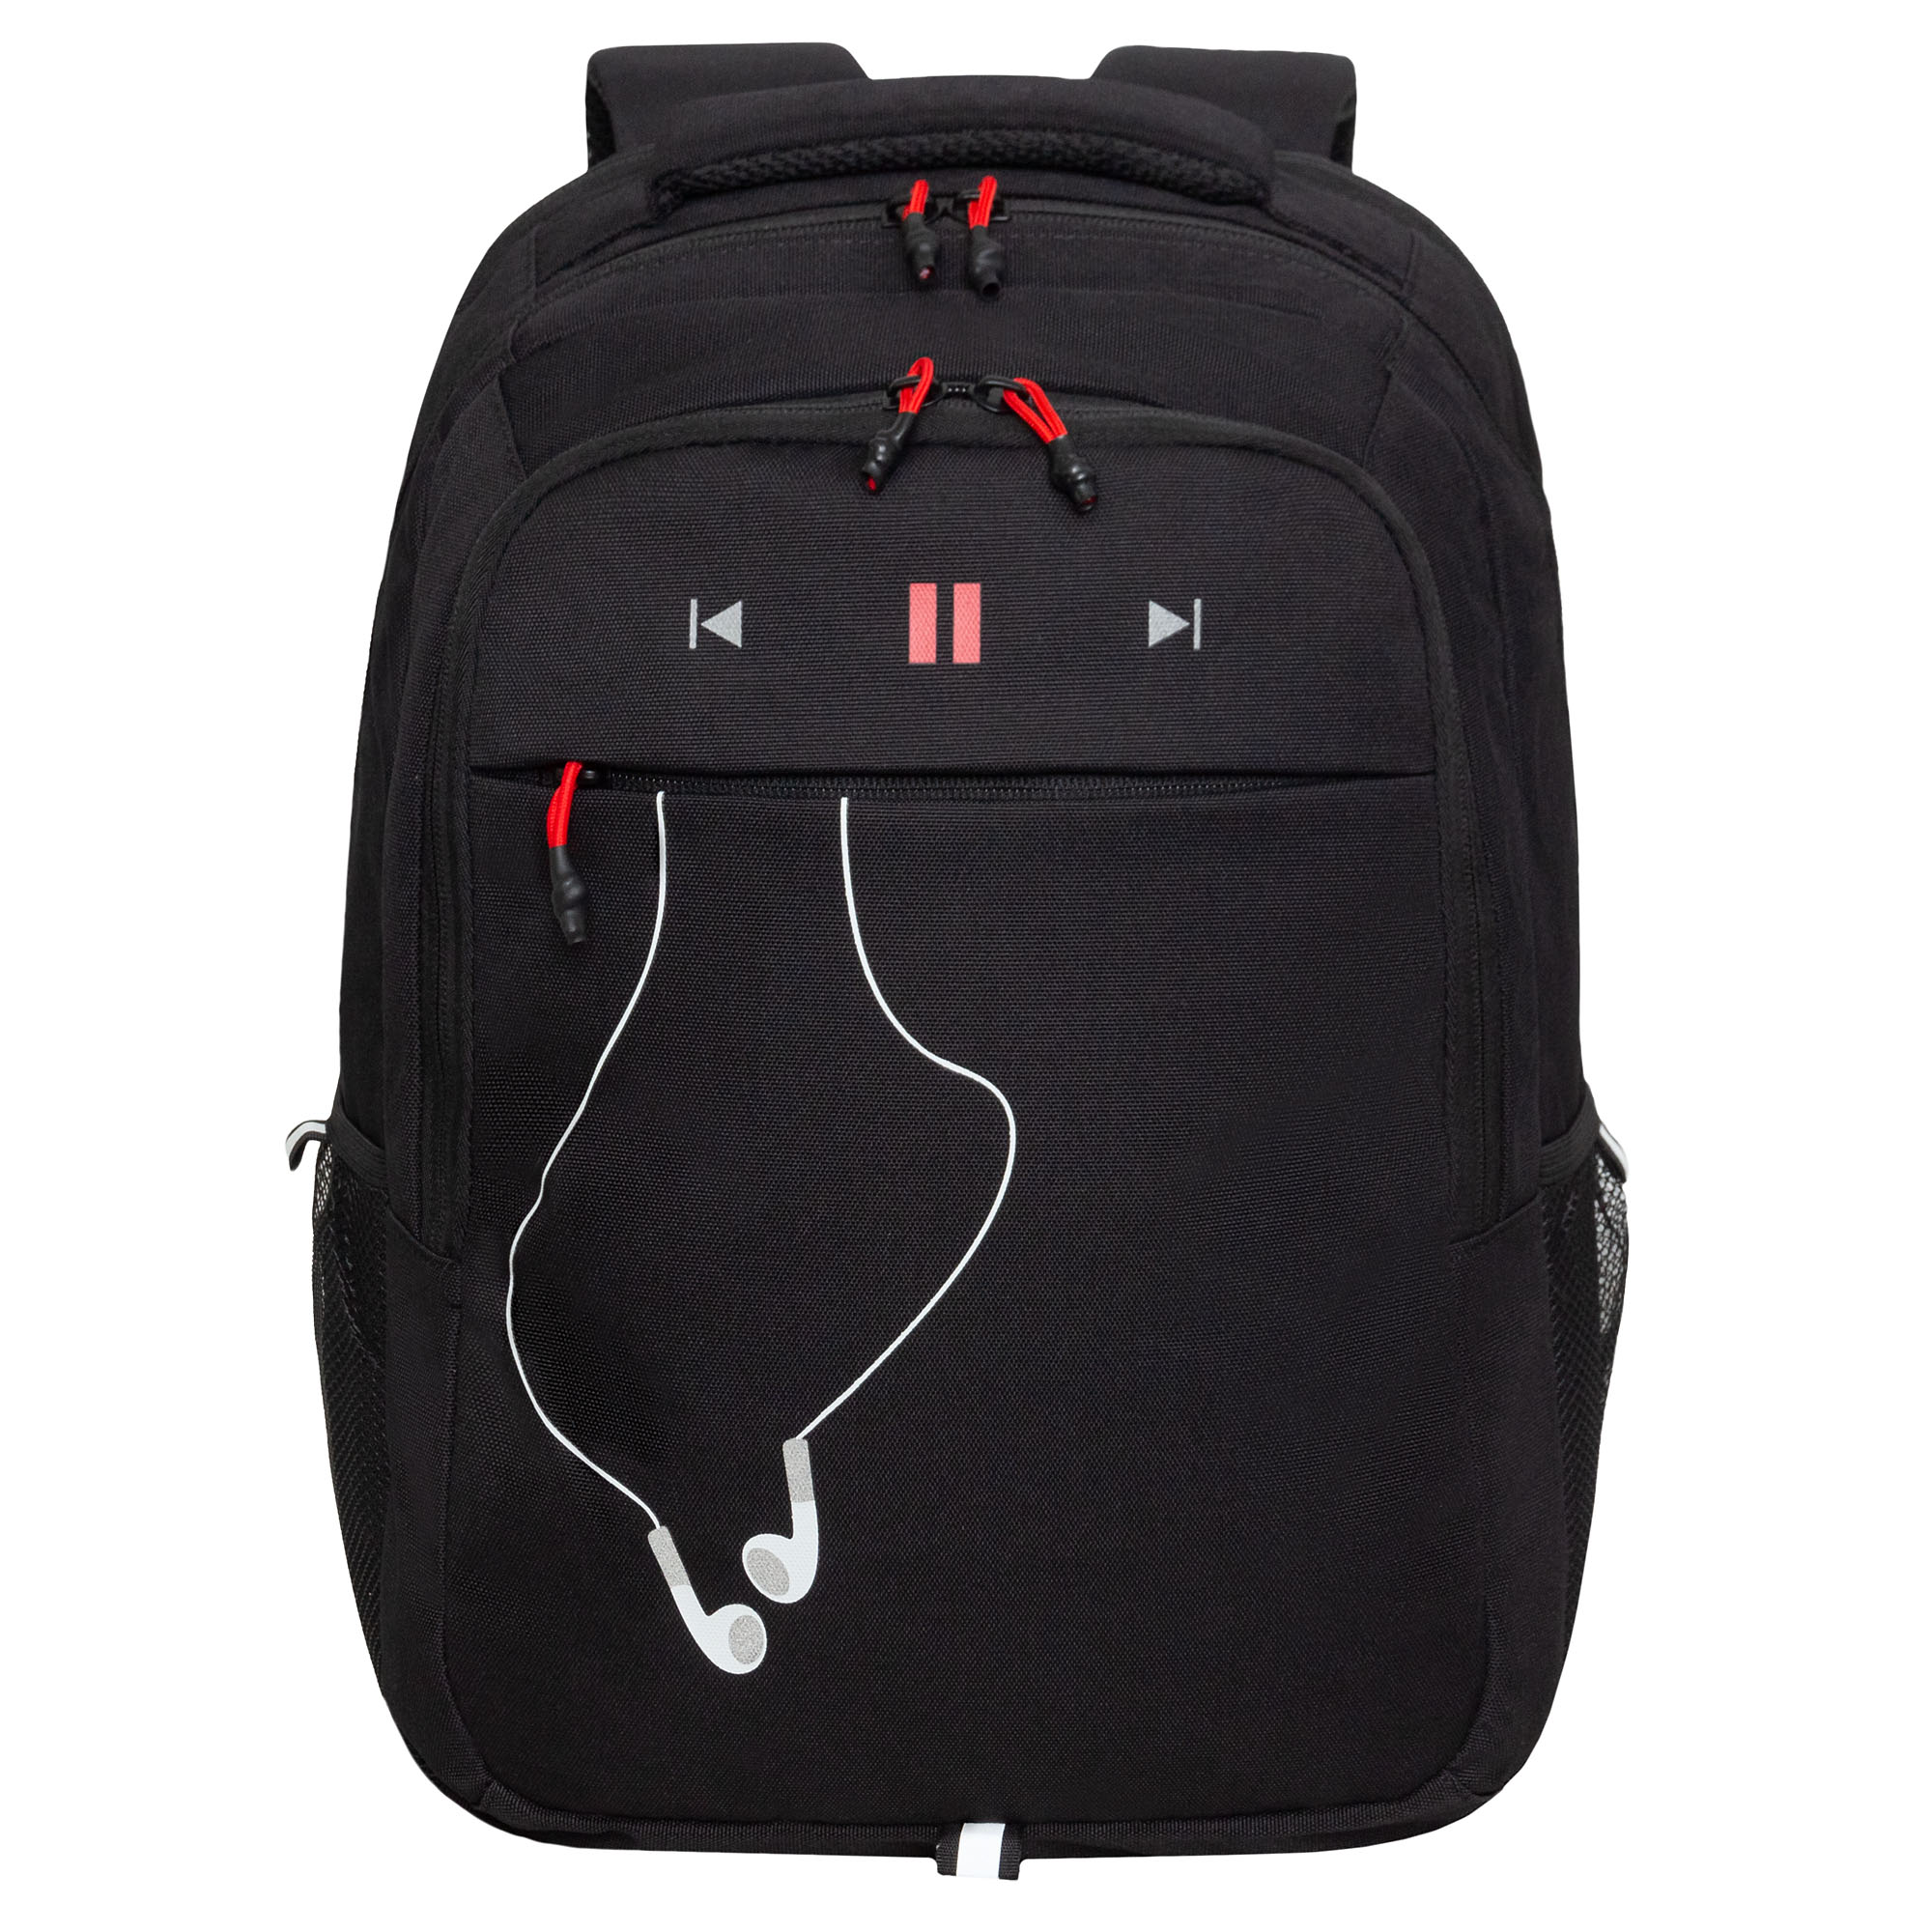 Рюкзак молодежный Grizzly с карманом для ноутбука 15, RU-432-4/2, черный, красный рюкзак для ноутбука 14 1 samsonite grey kj2 08002